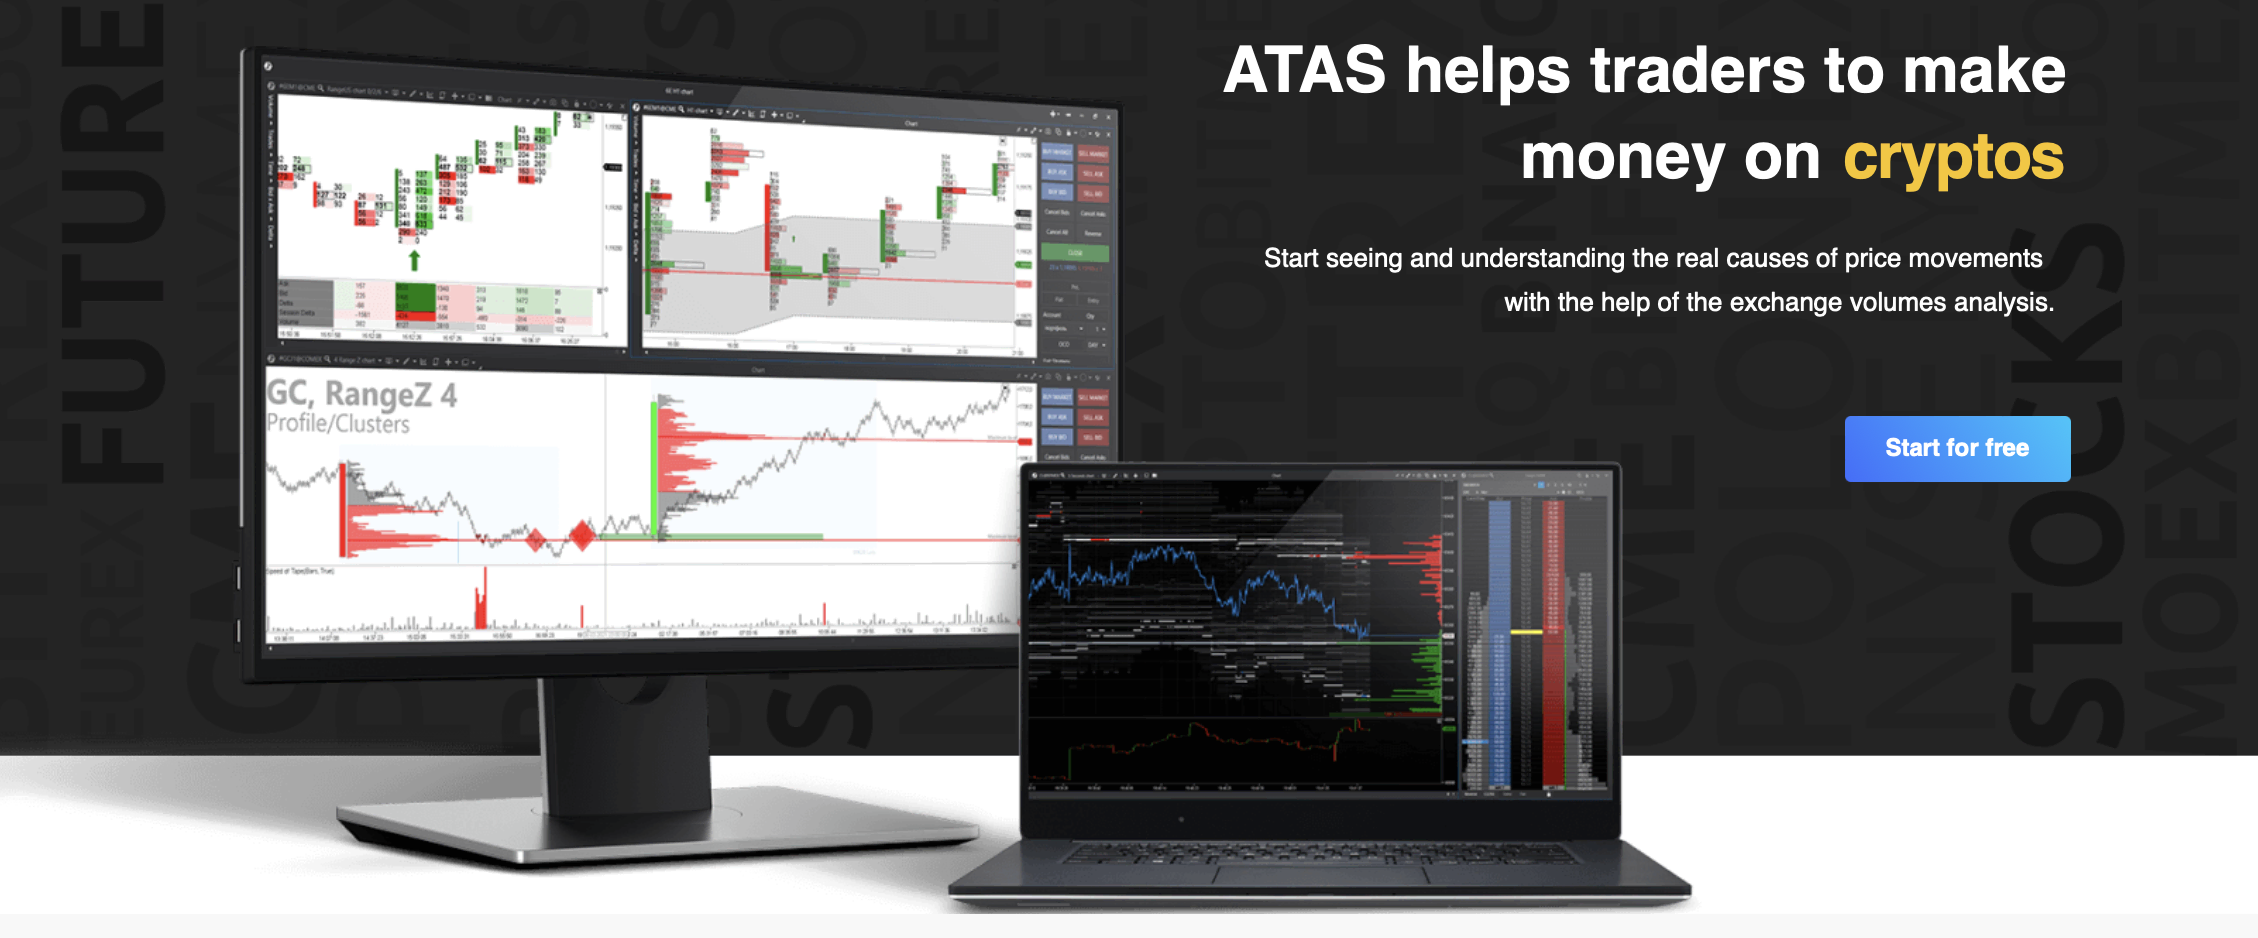 Den offisielle nettsiden til ATAS-handelsplattformen